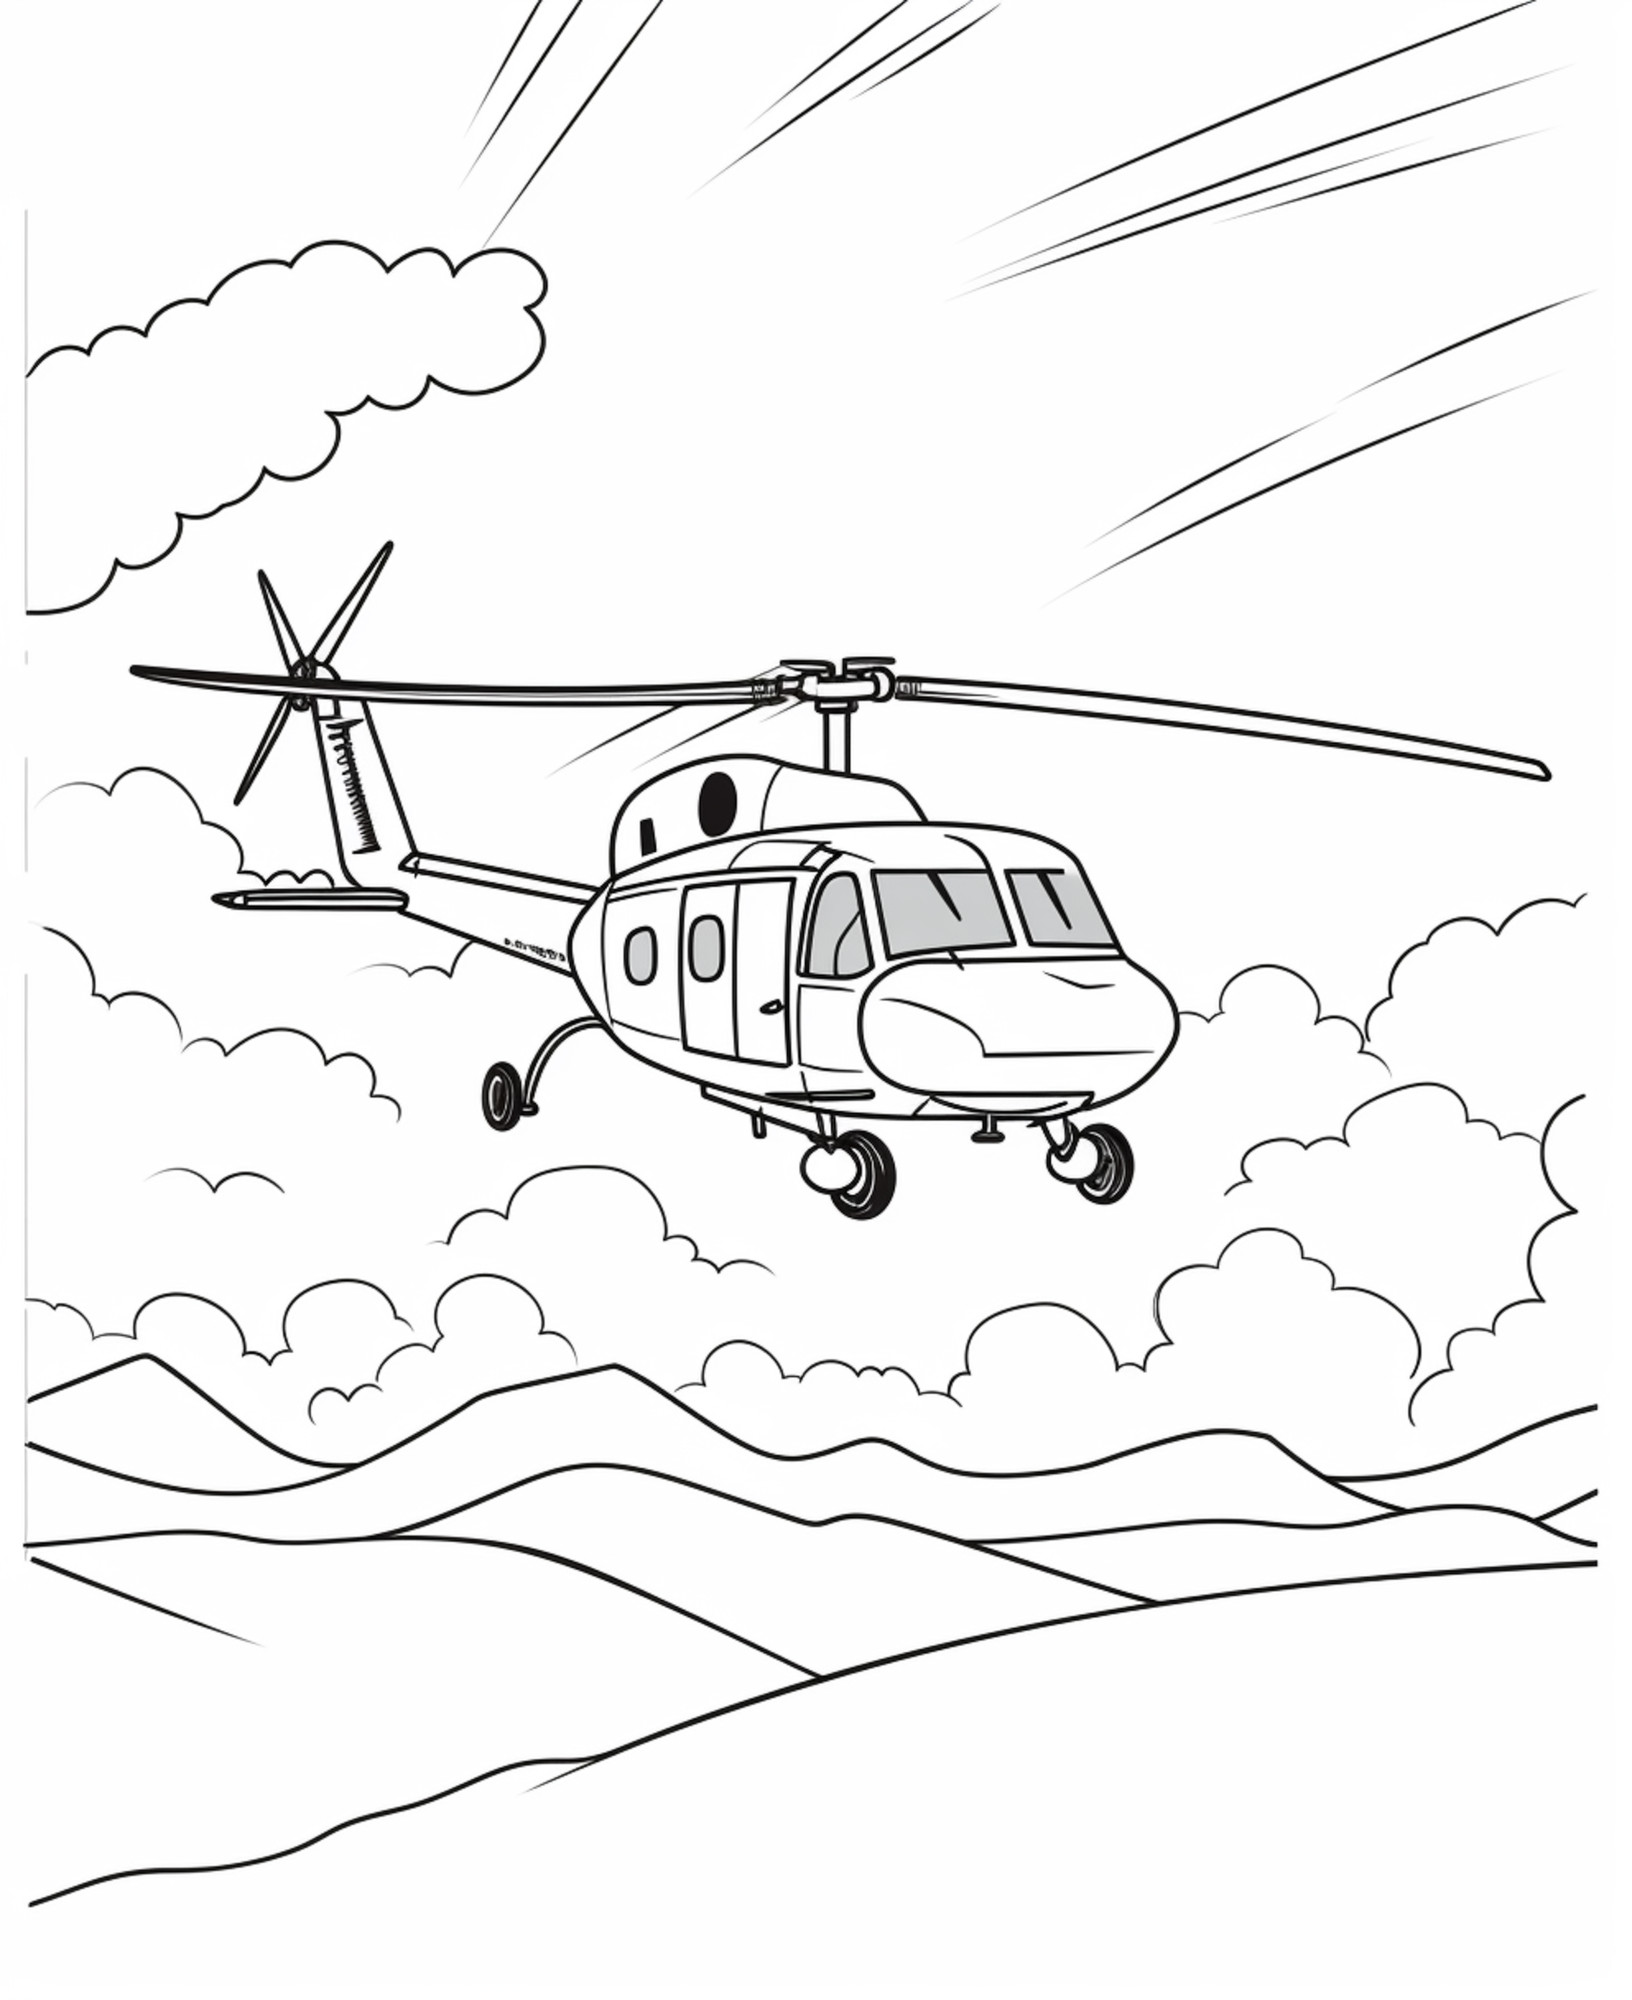 Раскраска для детей: вертолет заходит на посадку